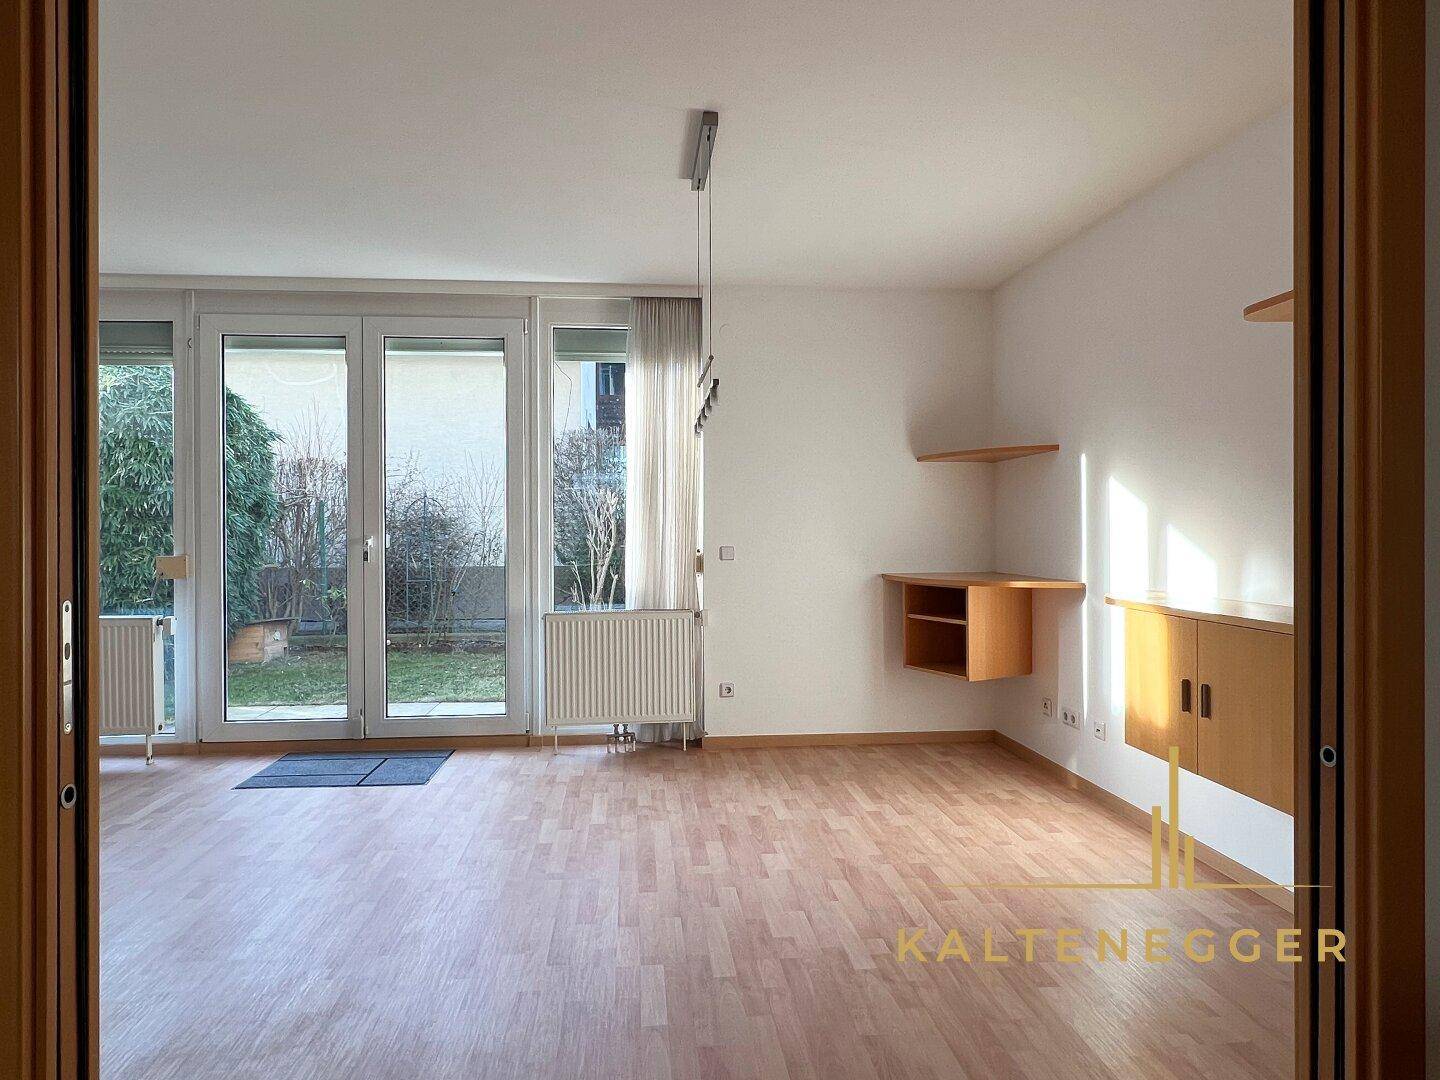 EG: Wohnzimmer 23 m² - Blick von der abtrennbaren Küche